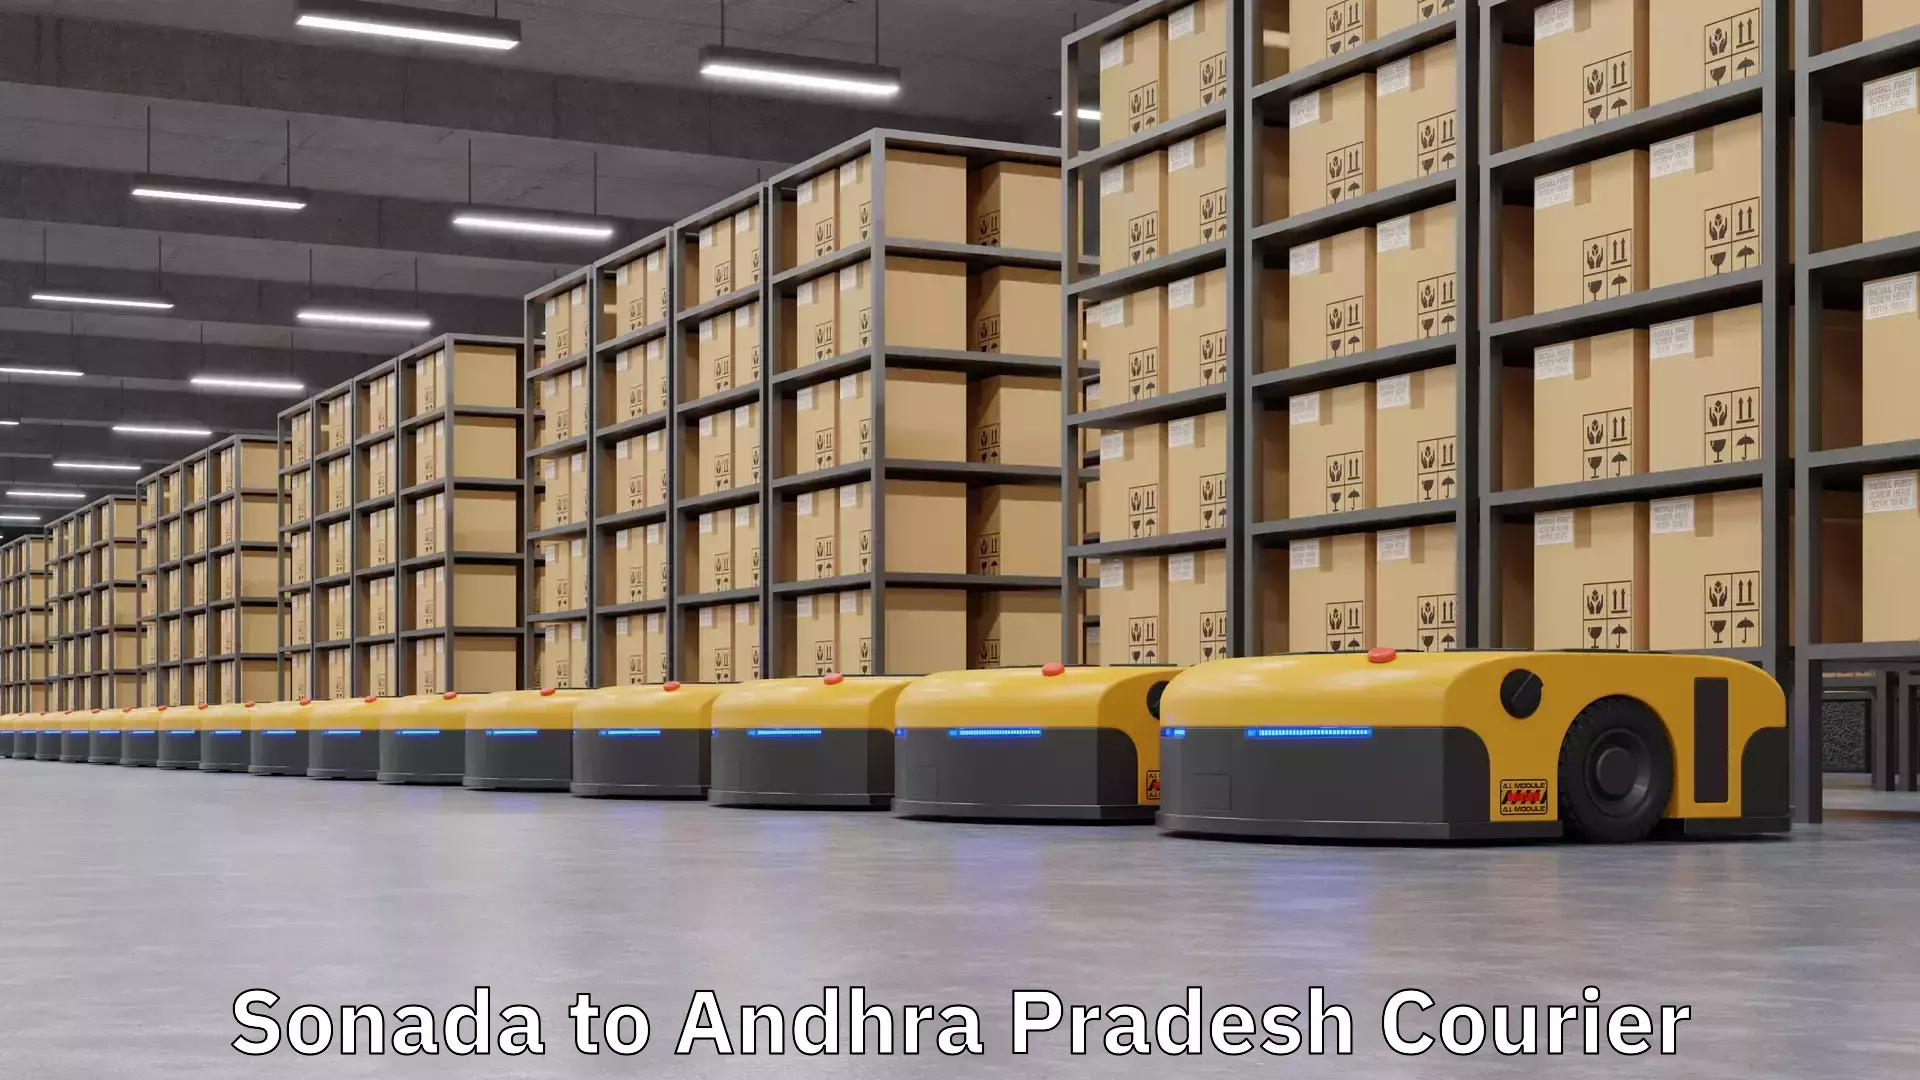 User-friendly delivery service Sonada to Andhra Pradesh